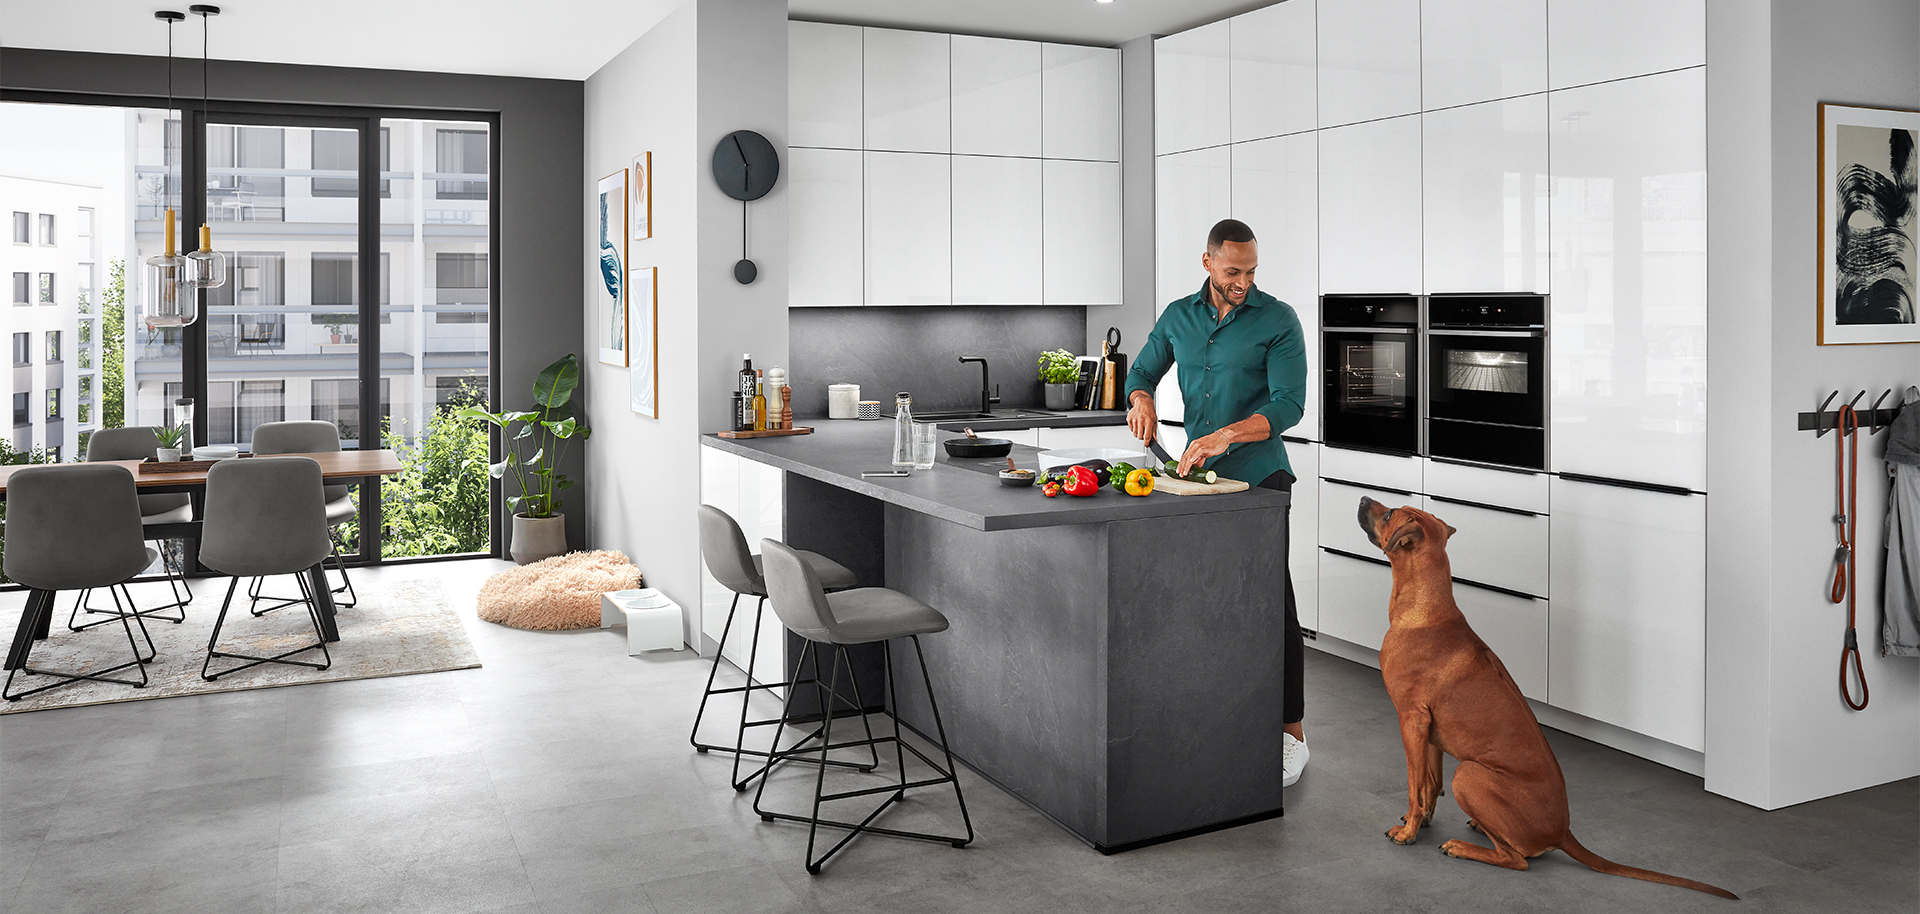 Elegantní moderní kuchyňská scéna s mužem, který připravuje jídlo na ostrovním pultu, přičemž ho sleduje pes, odrážející pohodlný, současný domácí životní styl.